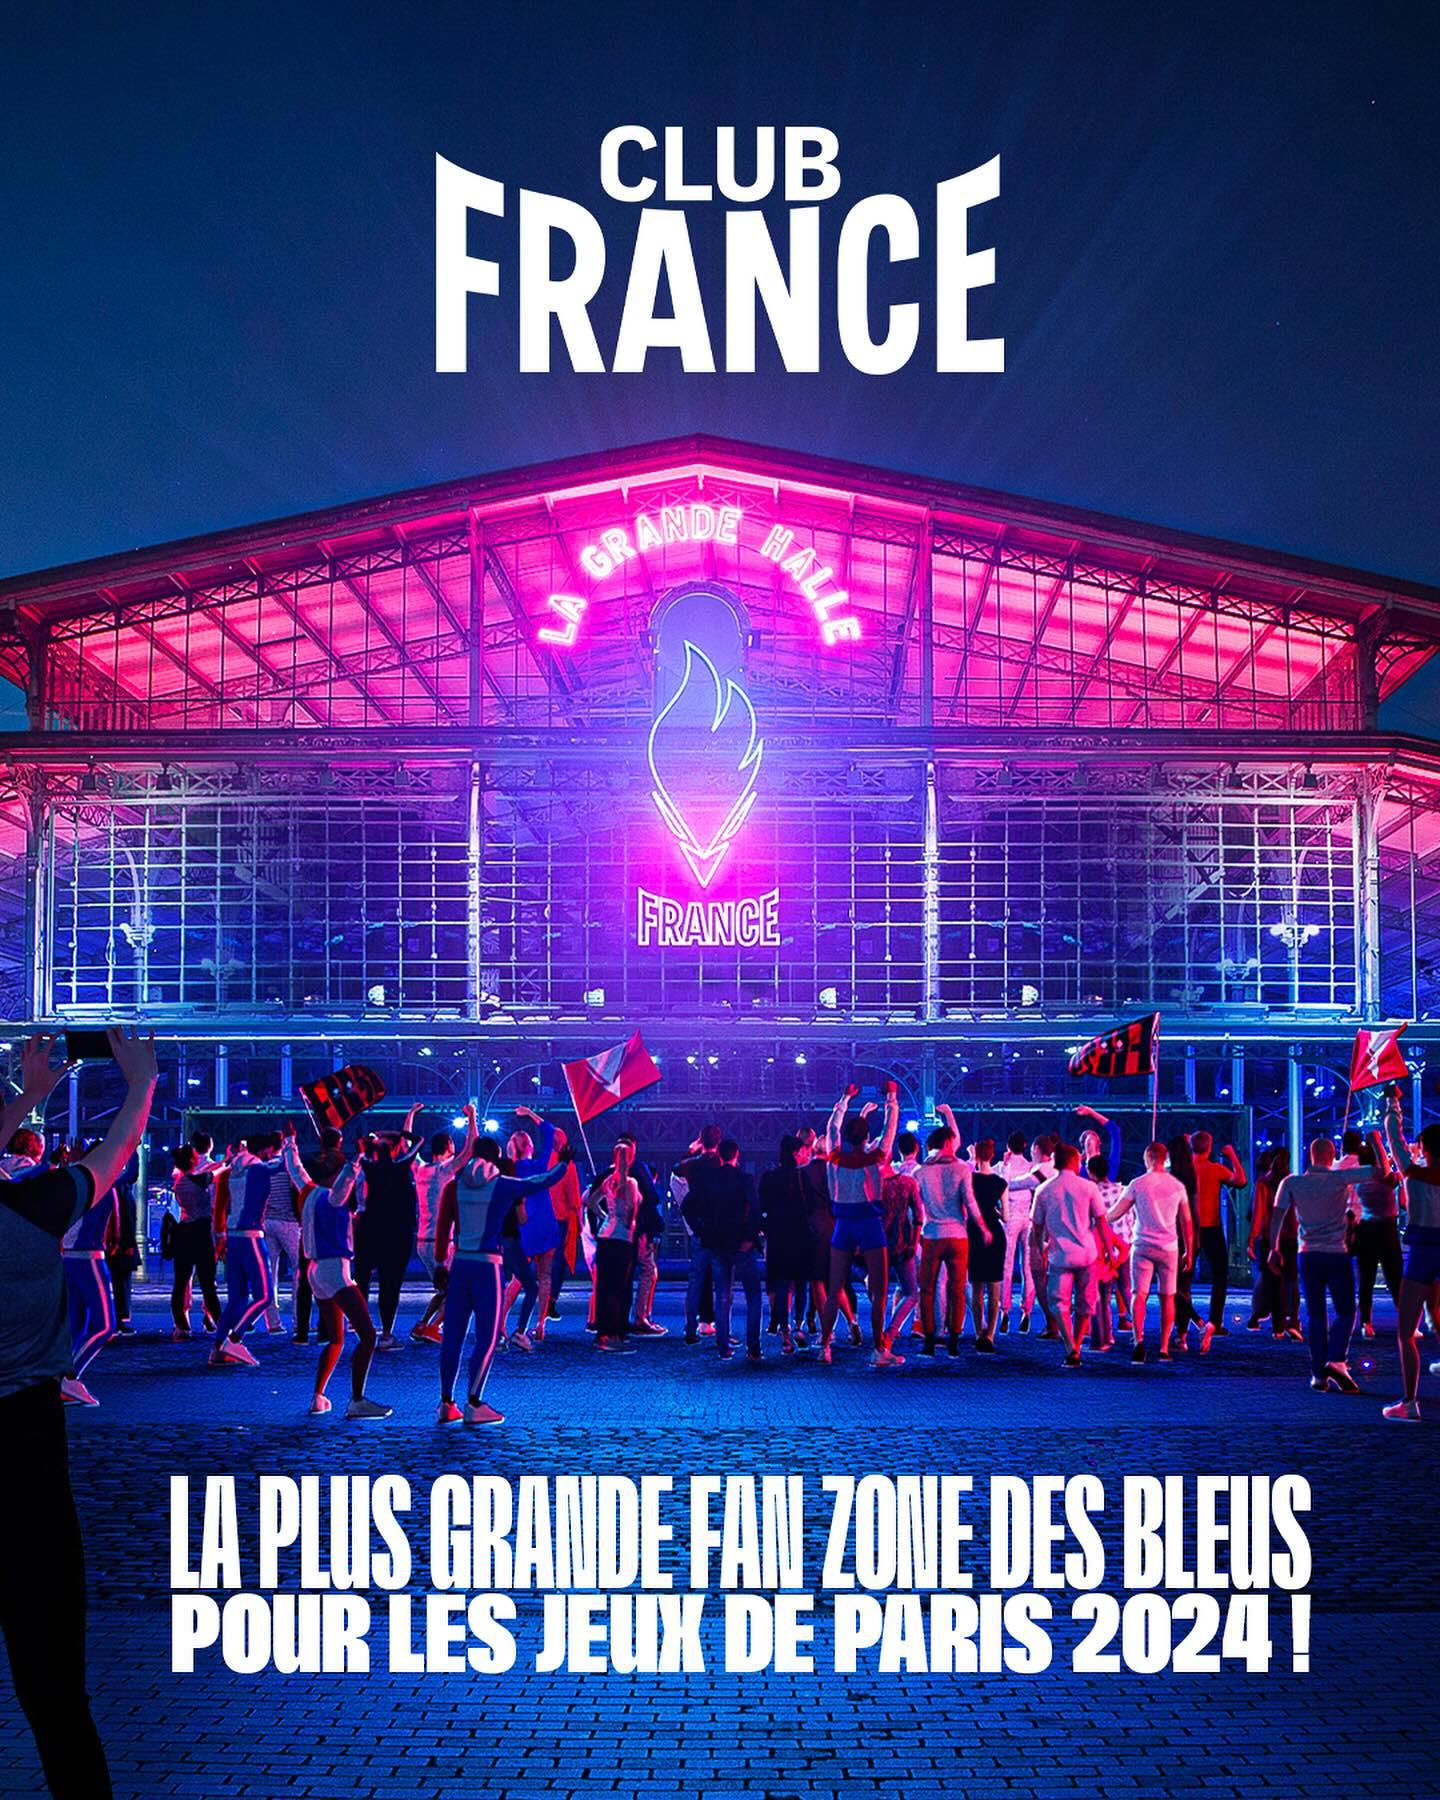 FAN Zone JO2024 CLUB FRANCE: Parc & Halle de la Villette (Paris 19e) Sports, Live, Concerts, Dance, screen , food truck… night&day